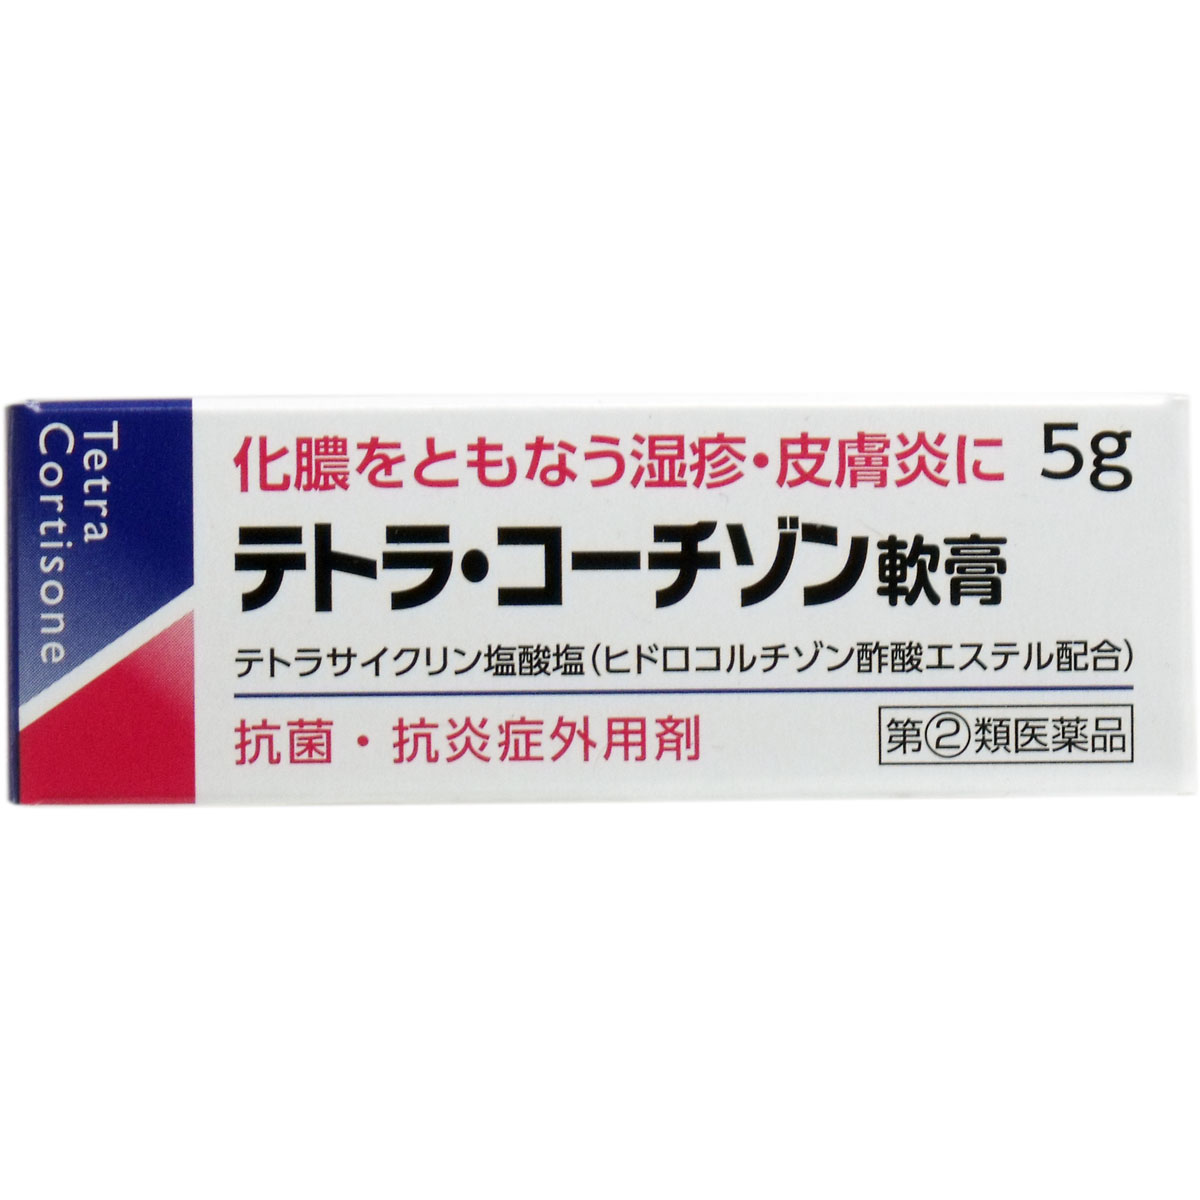 【第 2 類医薬品】 テトラコーチゾン軟膏 5g